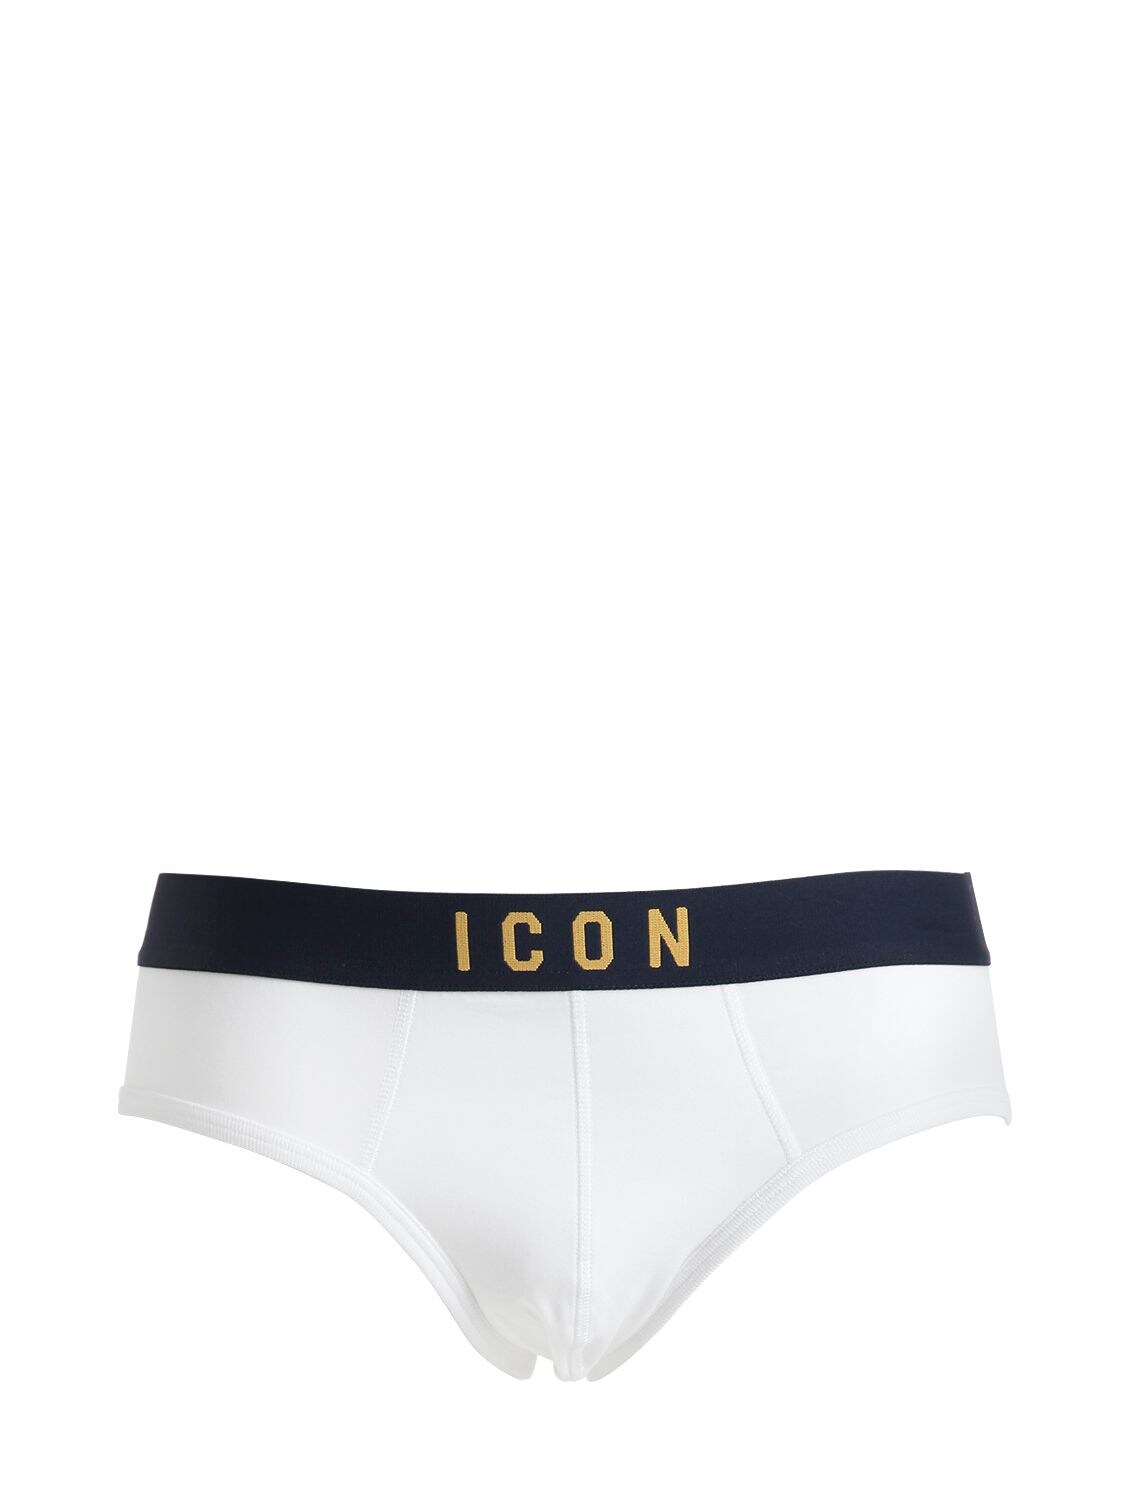 Dsquared2 Underwear Icon Cotton Jersey Briefs In White/navy